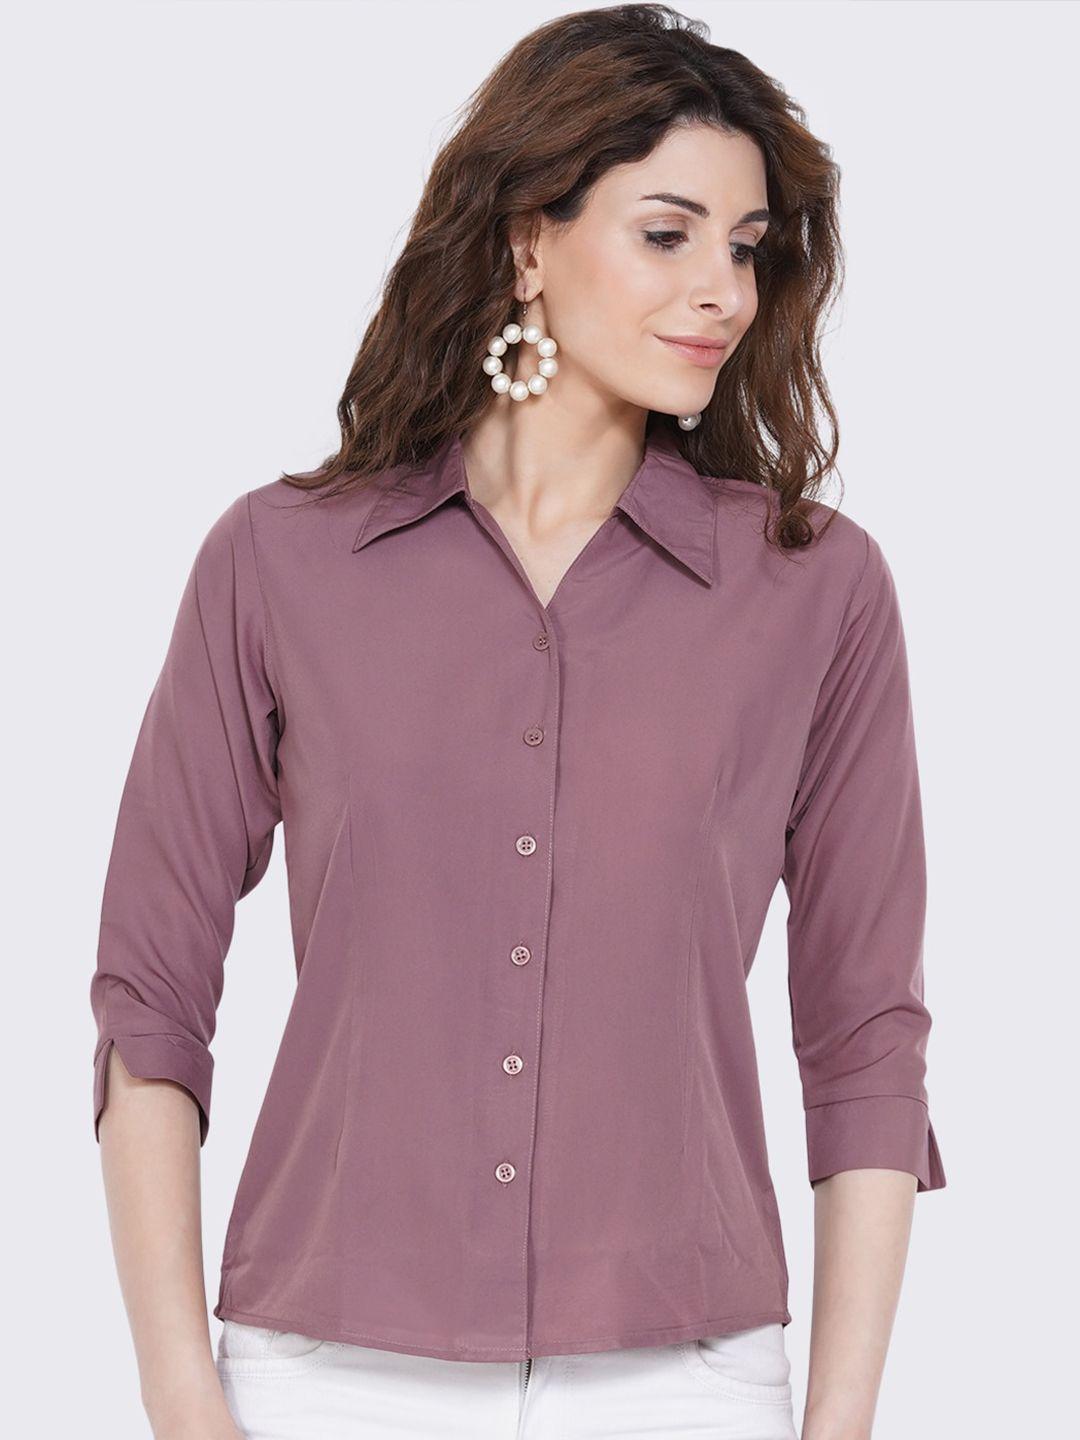 akshatani women lavender casual shirt